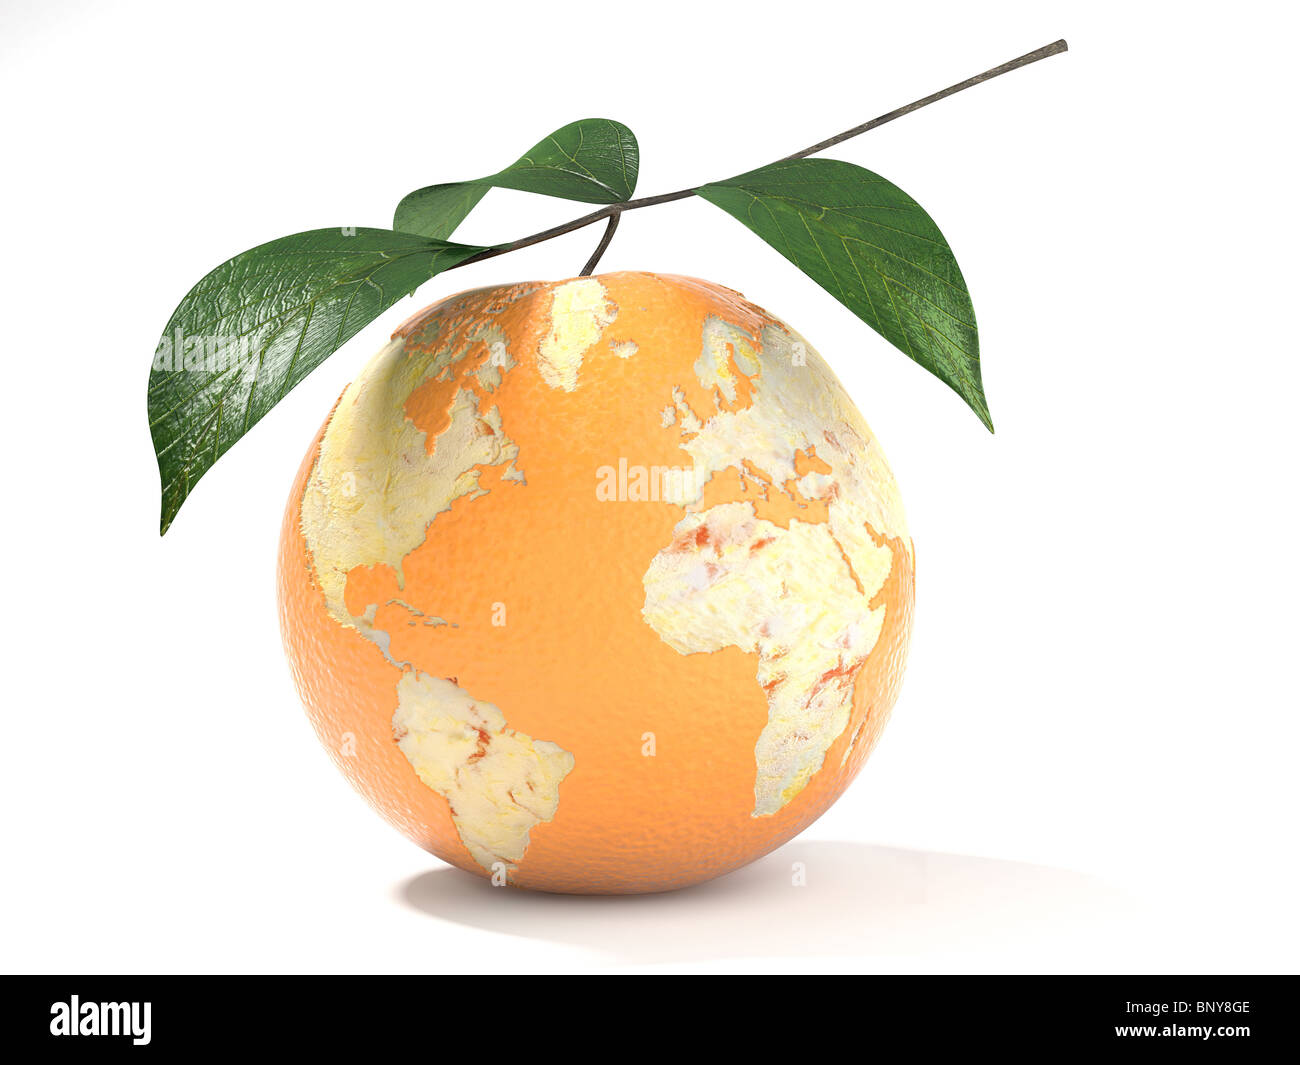 Konzept der Earth-Karte auf eine teilweise geschälte Orange gemacht. Stockfoto